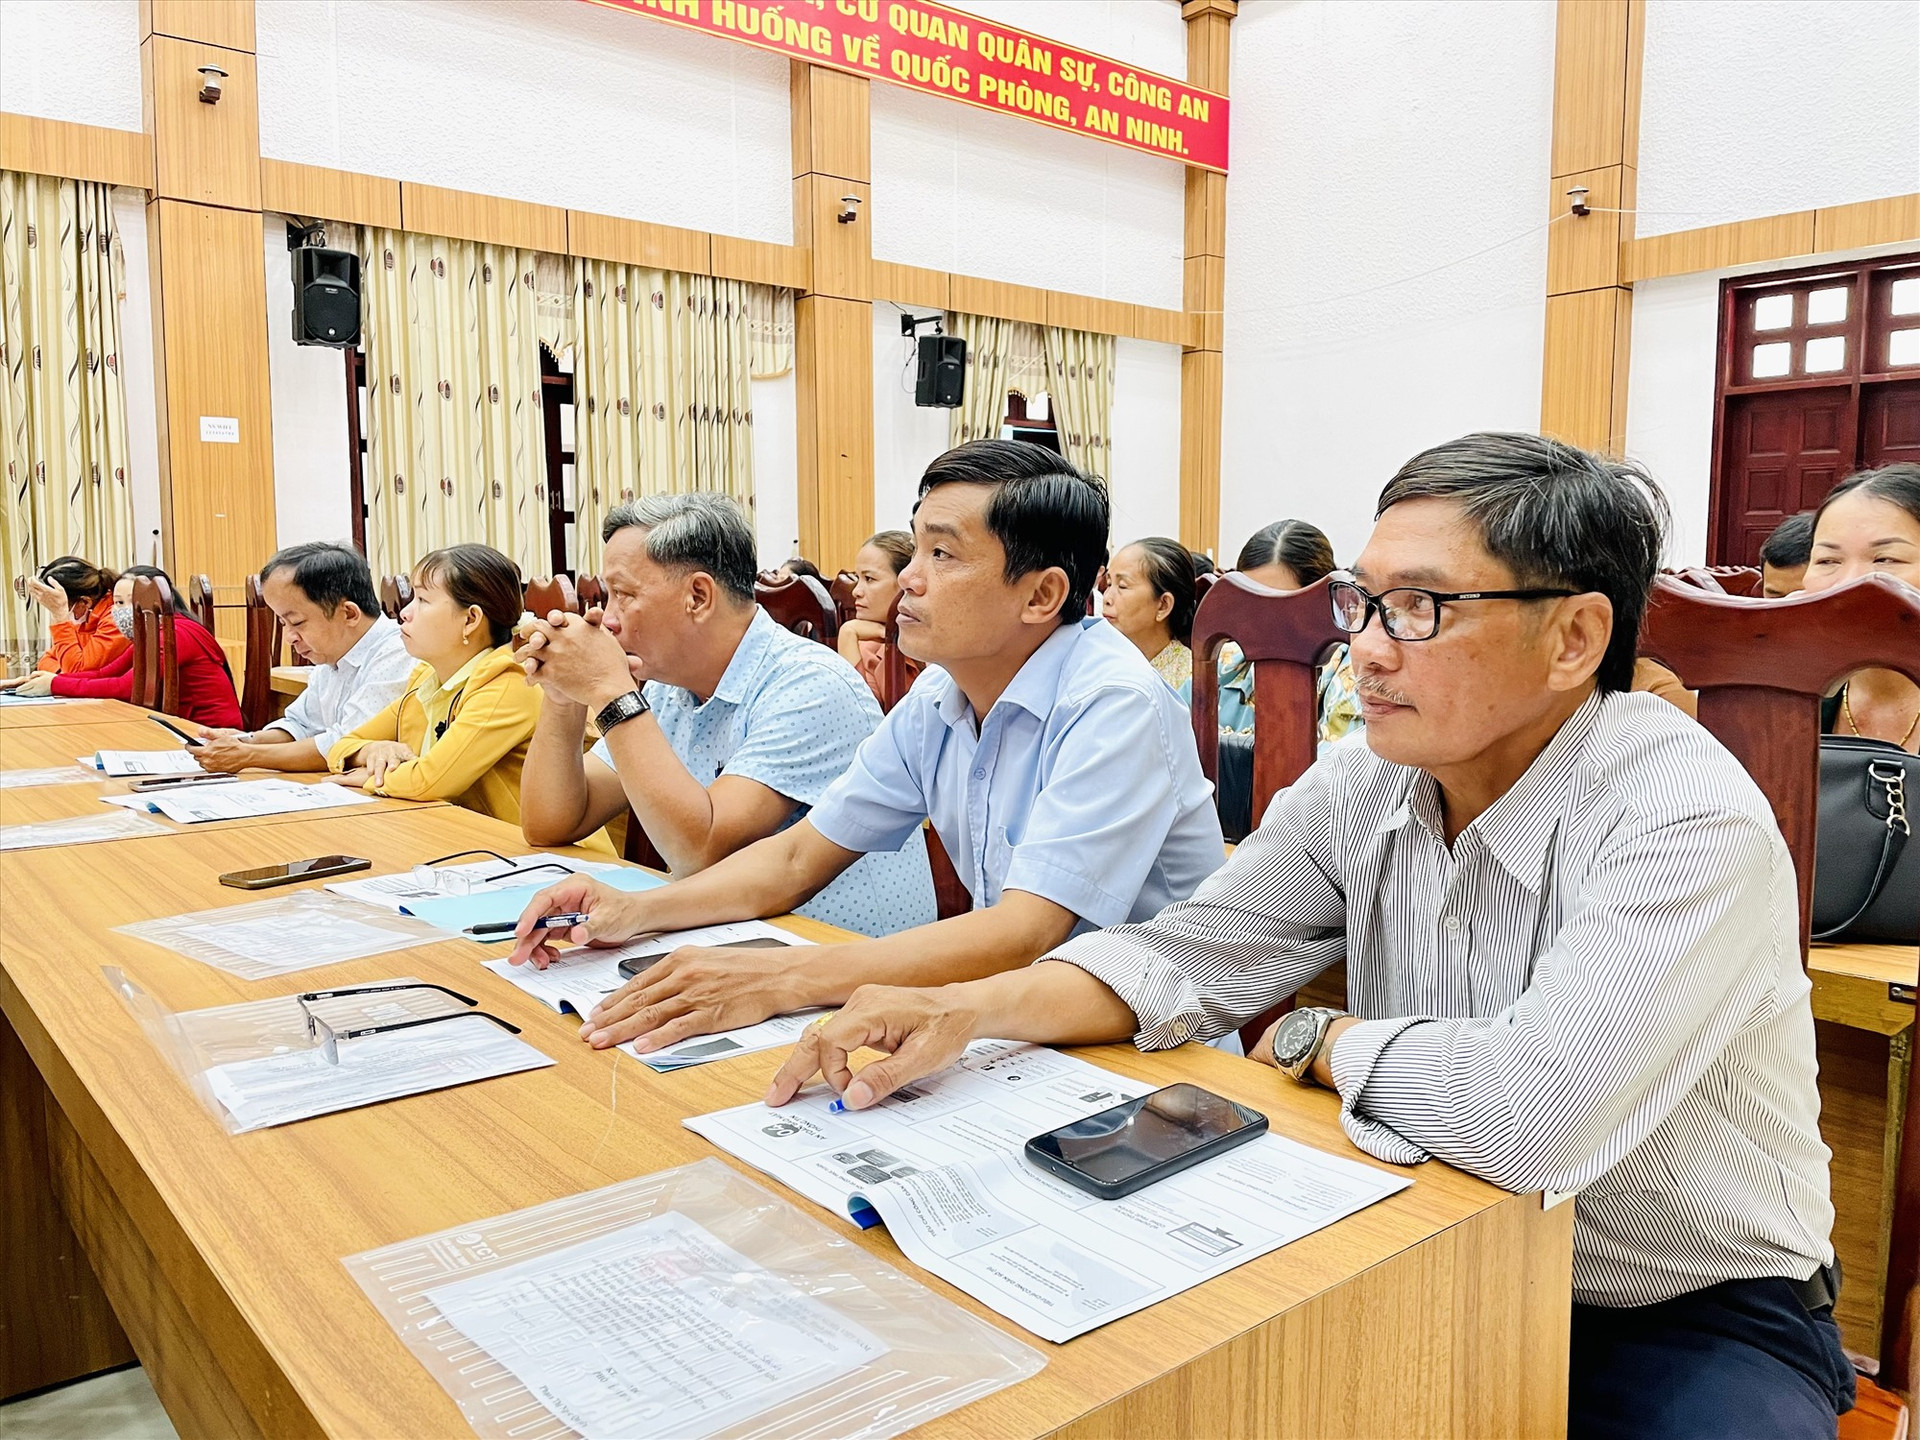 Thành viên các tổ công nghệ số cộng đồng ở Nông Sơn tham gia buổi tập huấn. Ảnh: MINH TÂM